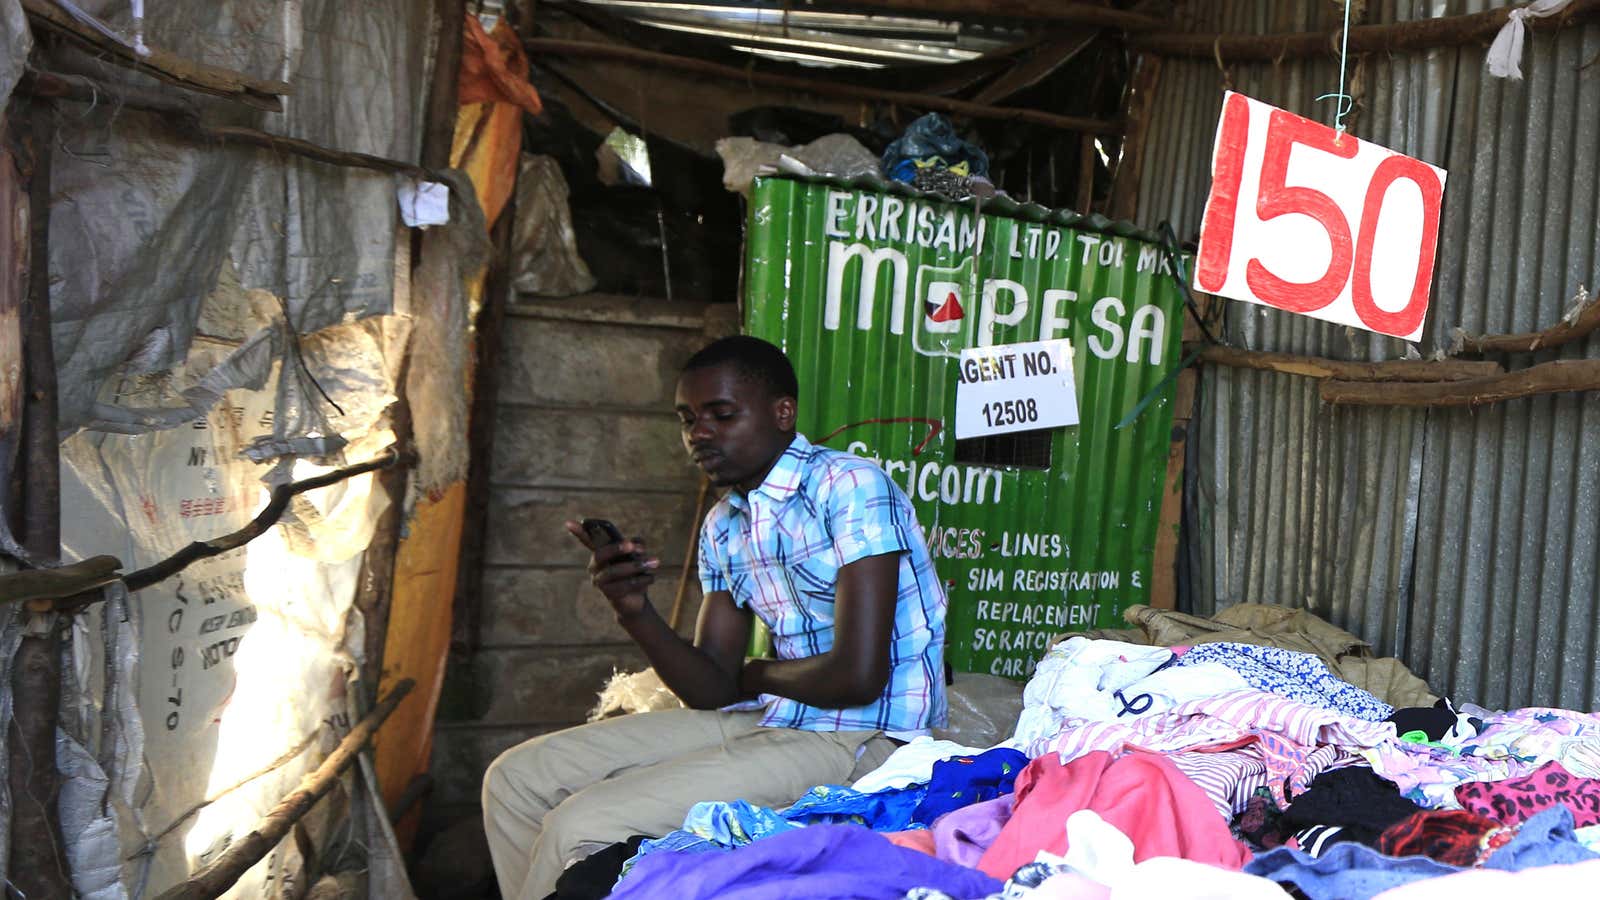 A kiosk for mobile money platform M-Pesa in Kibera, a slum in Nairobi.